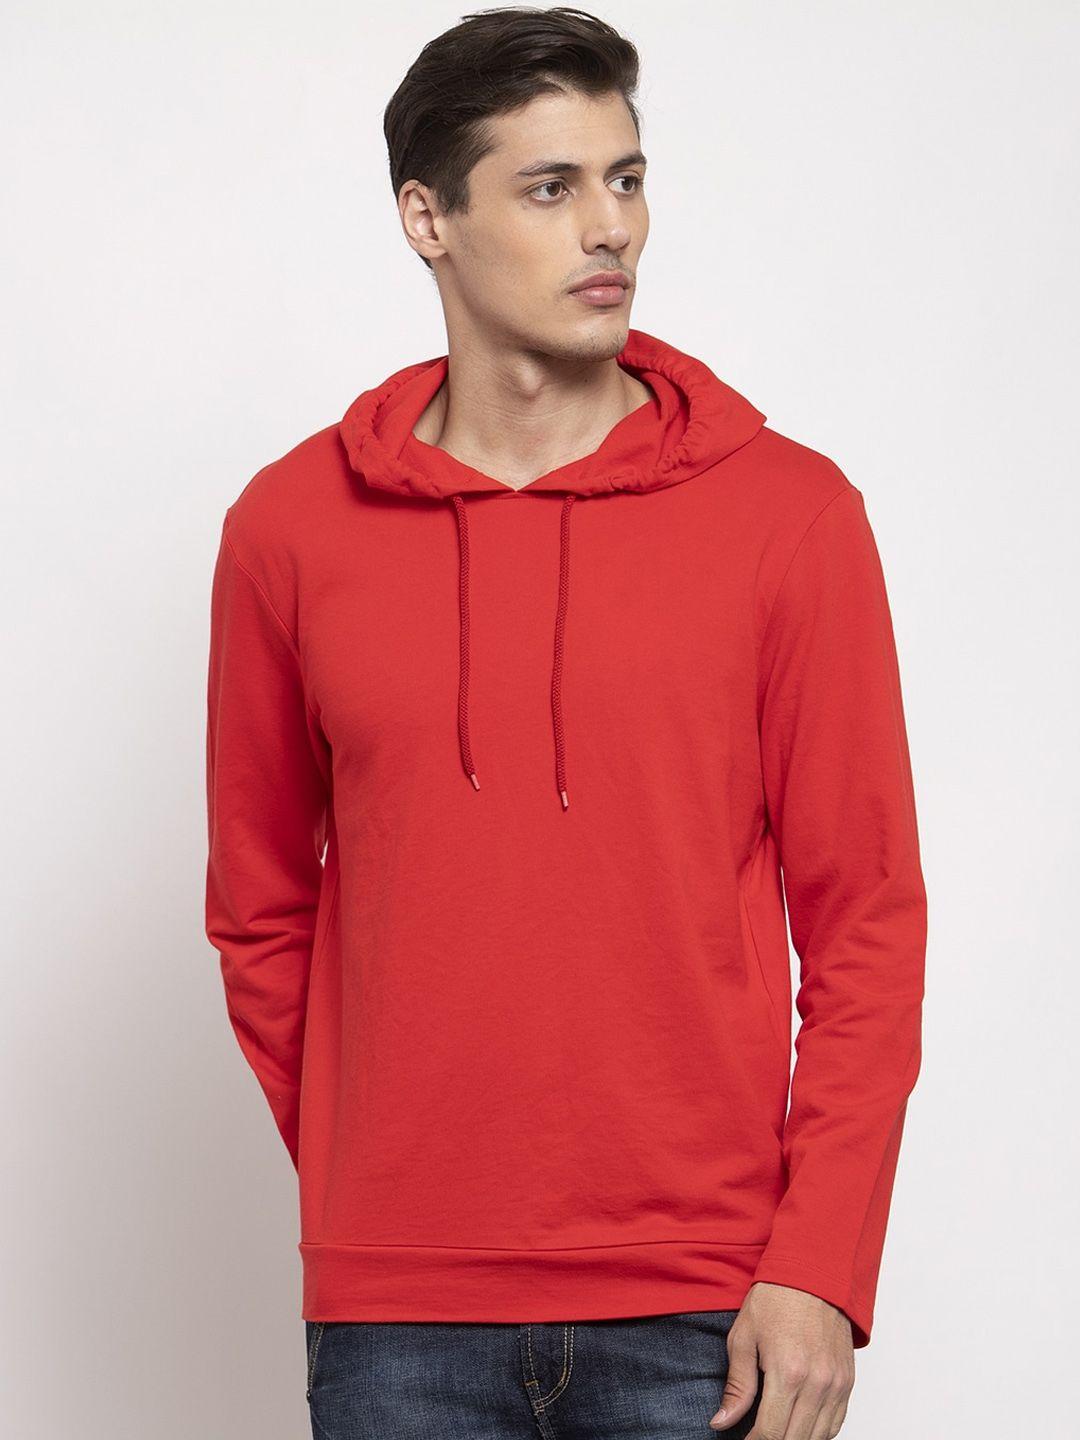 door74-men-red-hooded-sweatshirt